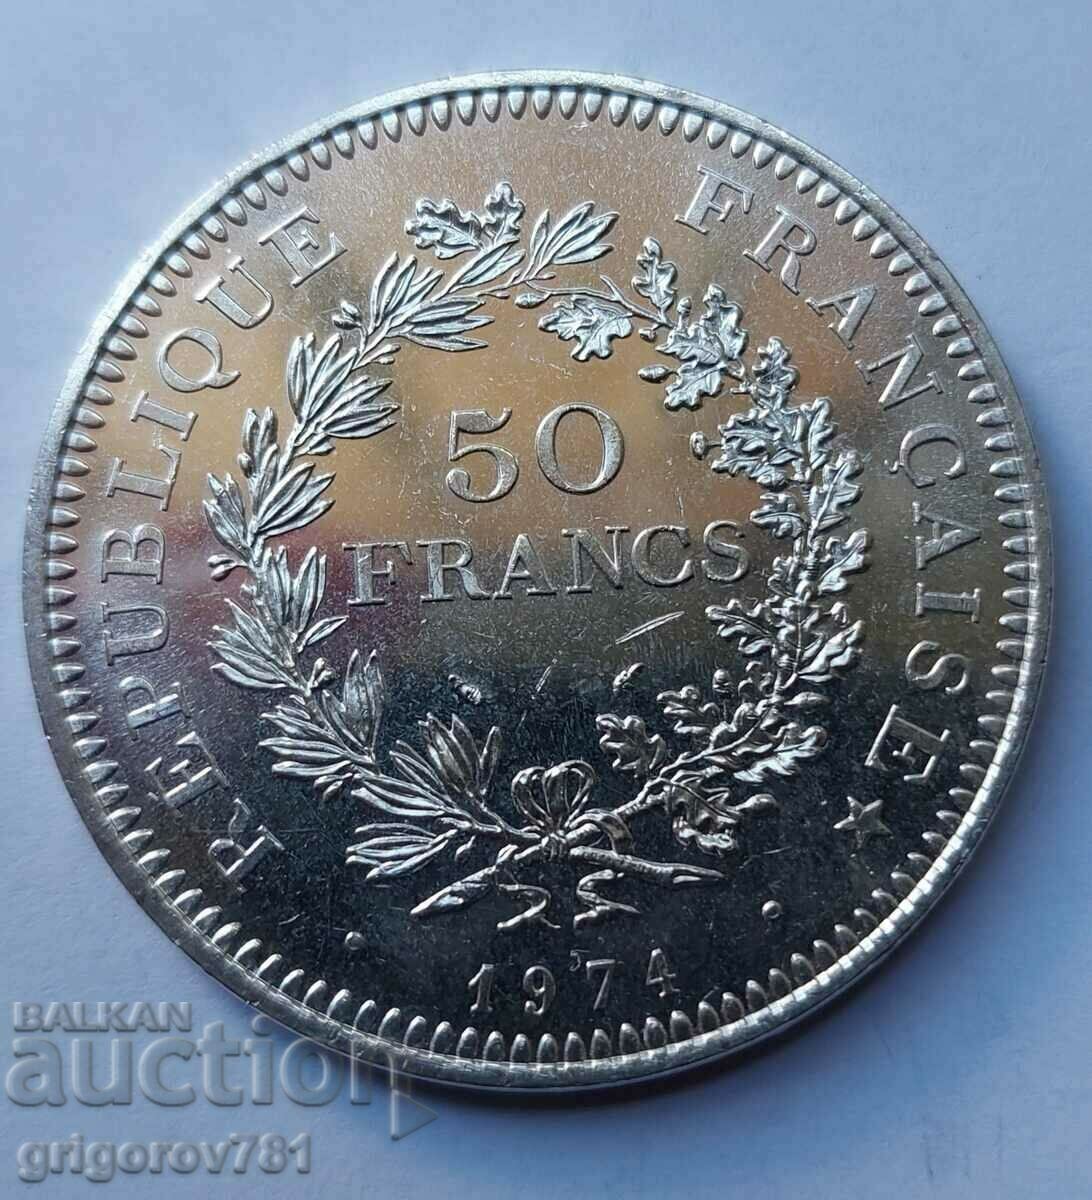 Ασήμι 50 φράγκων Γαλλία 1974 - Ασημένιο νόμισμα #30